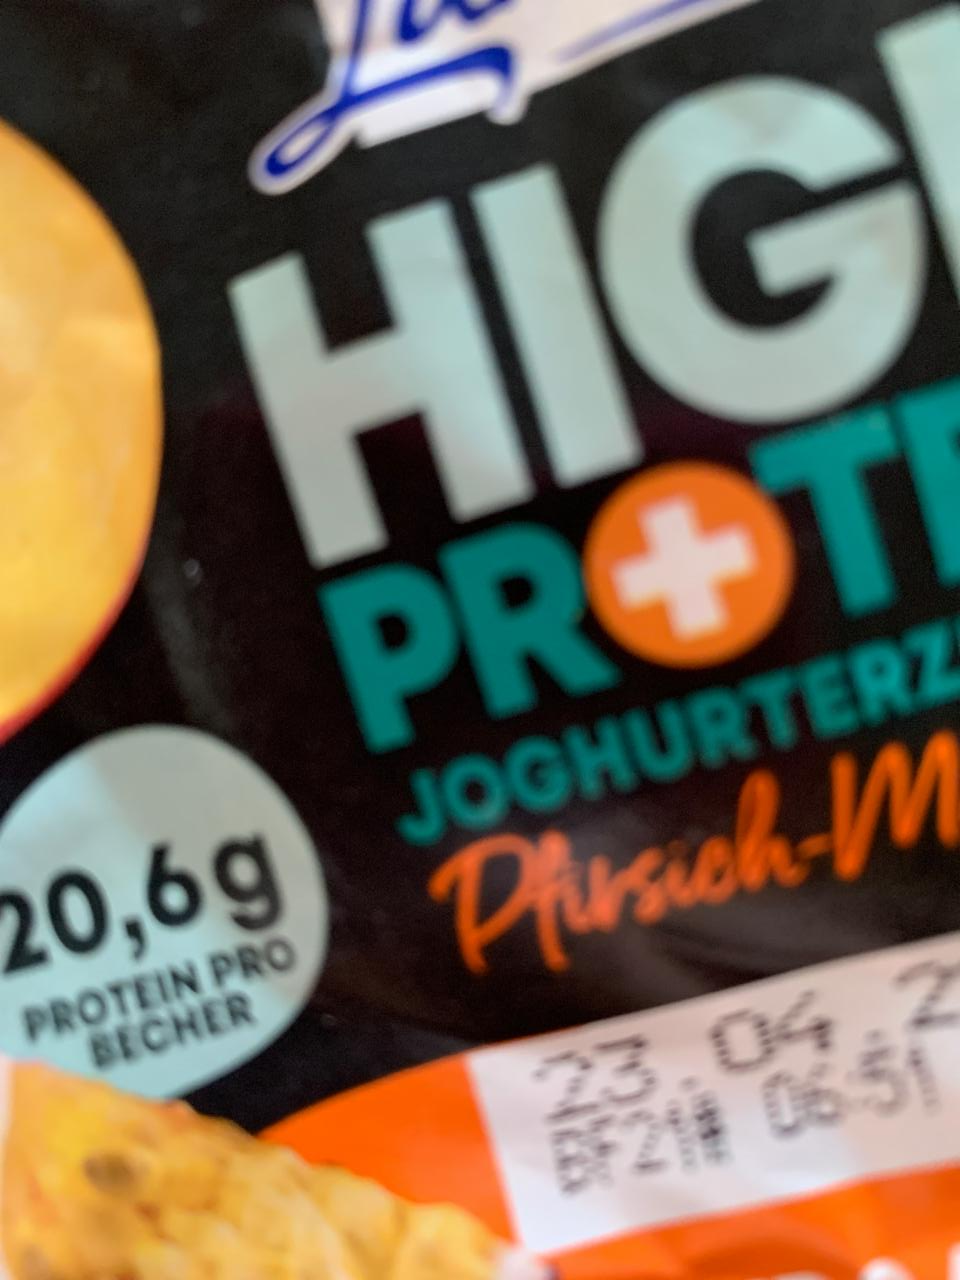 Fotografie - High Protein joghurterzeugnis Pfirsich-Maracuja Gutes Land